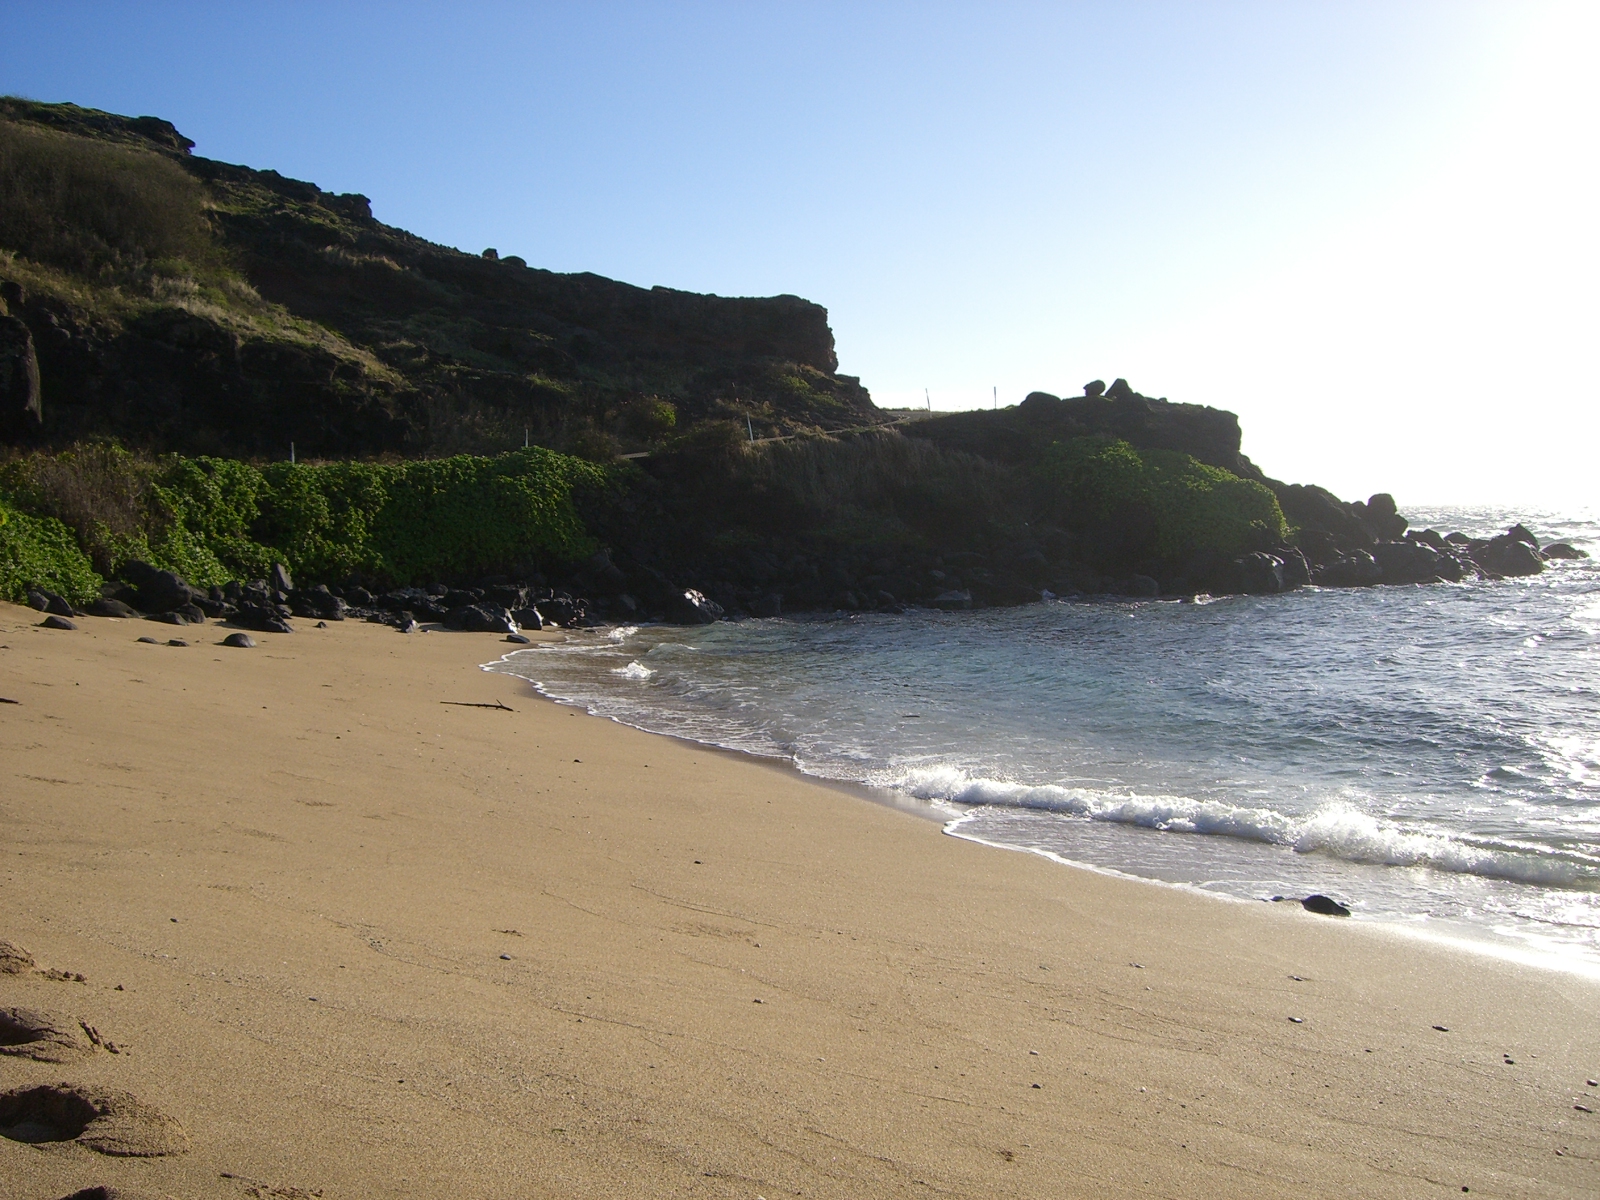 Foto av Kamehameha Beach med ljus sand och stenar yta